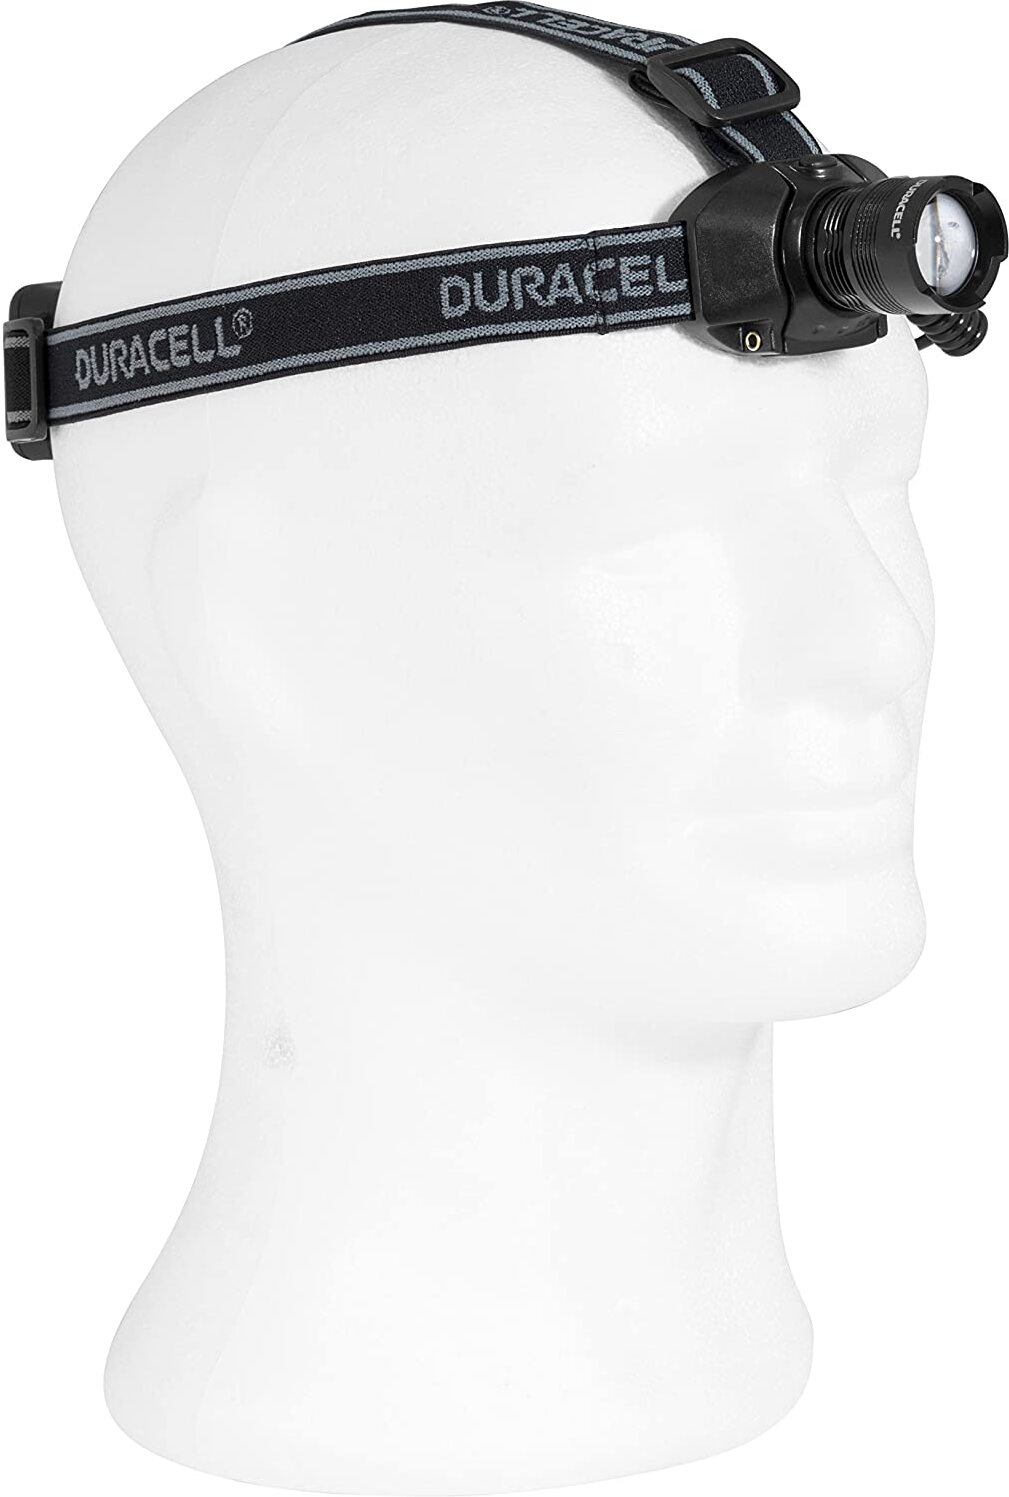 Duracell Taschenlampe, Explorer Headlamp PRO Serie Stirnlampe mit Band, helle 120 Lumen, Schwarze Kunststoffbeschichtung